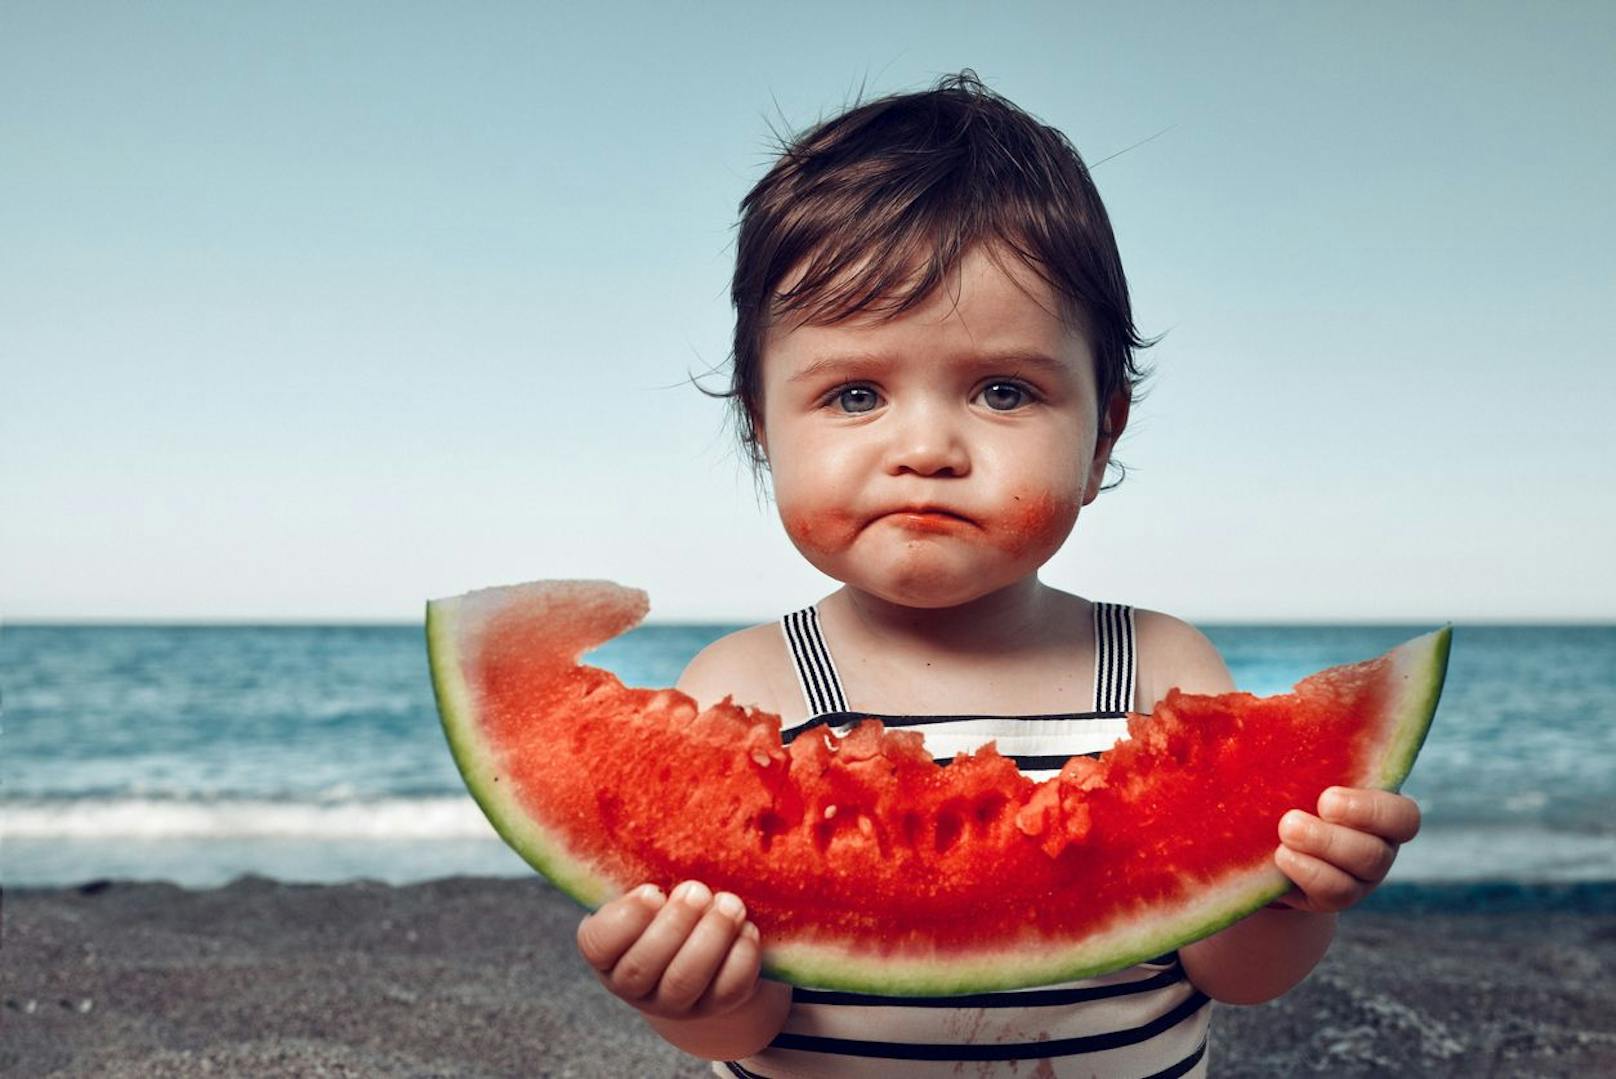 Eine Wassermelone kann süß und saftig sein, insofern sie richtig gereift ist.